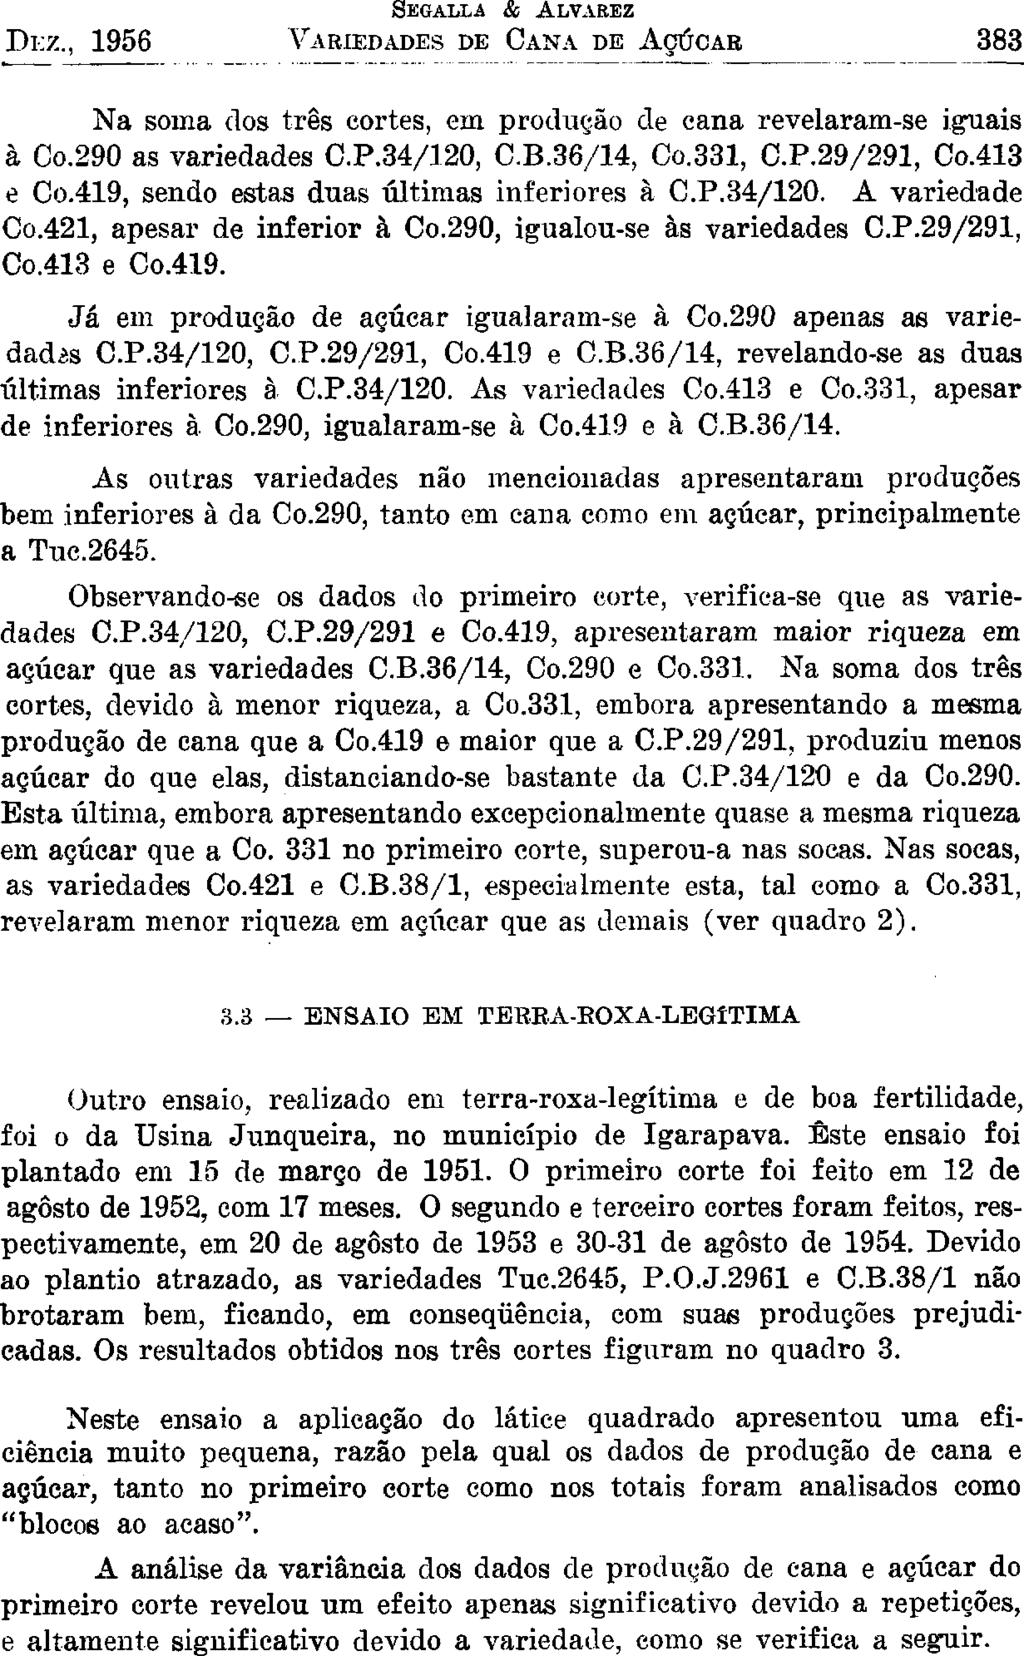 DEZ., 1956 Na sma ds três crtes, em prduçã de cana revelaram-se iguais à C.290 as variedades.p.34/120, C.B.36/14, C.331, C.P.29/291, C.413 e C.419, send estas duas últimas inferires à C.P.34/120. A variedade C.